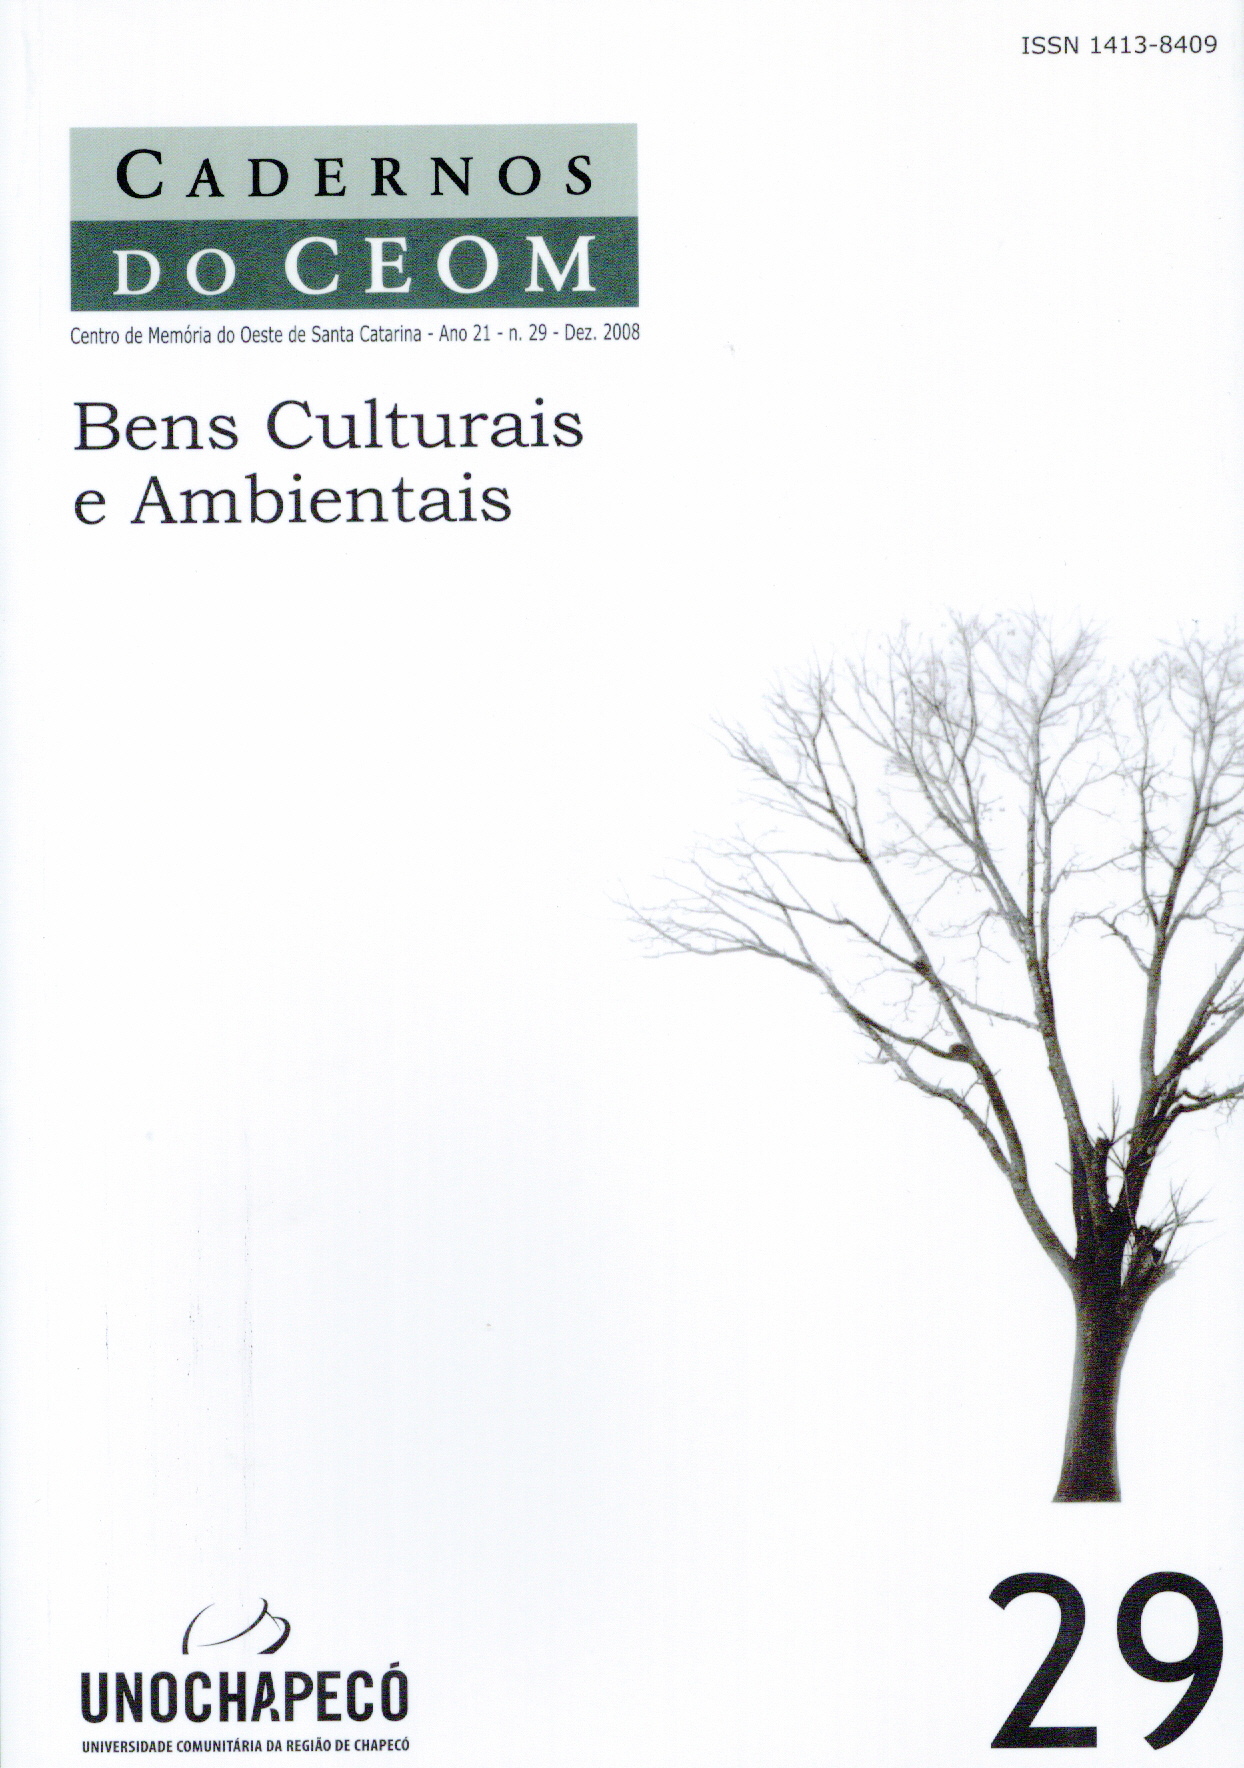 					View Vol. 21 No. 29: Bens Culturais e Ambientais
				